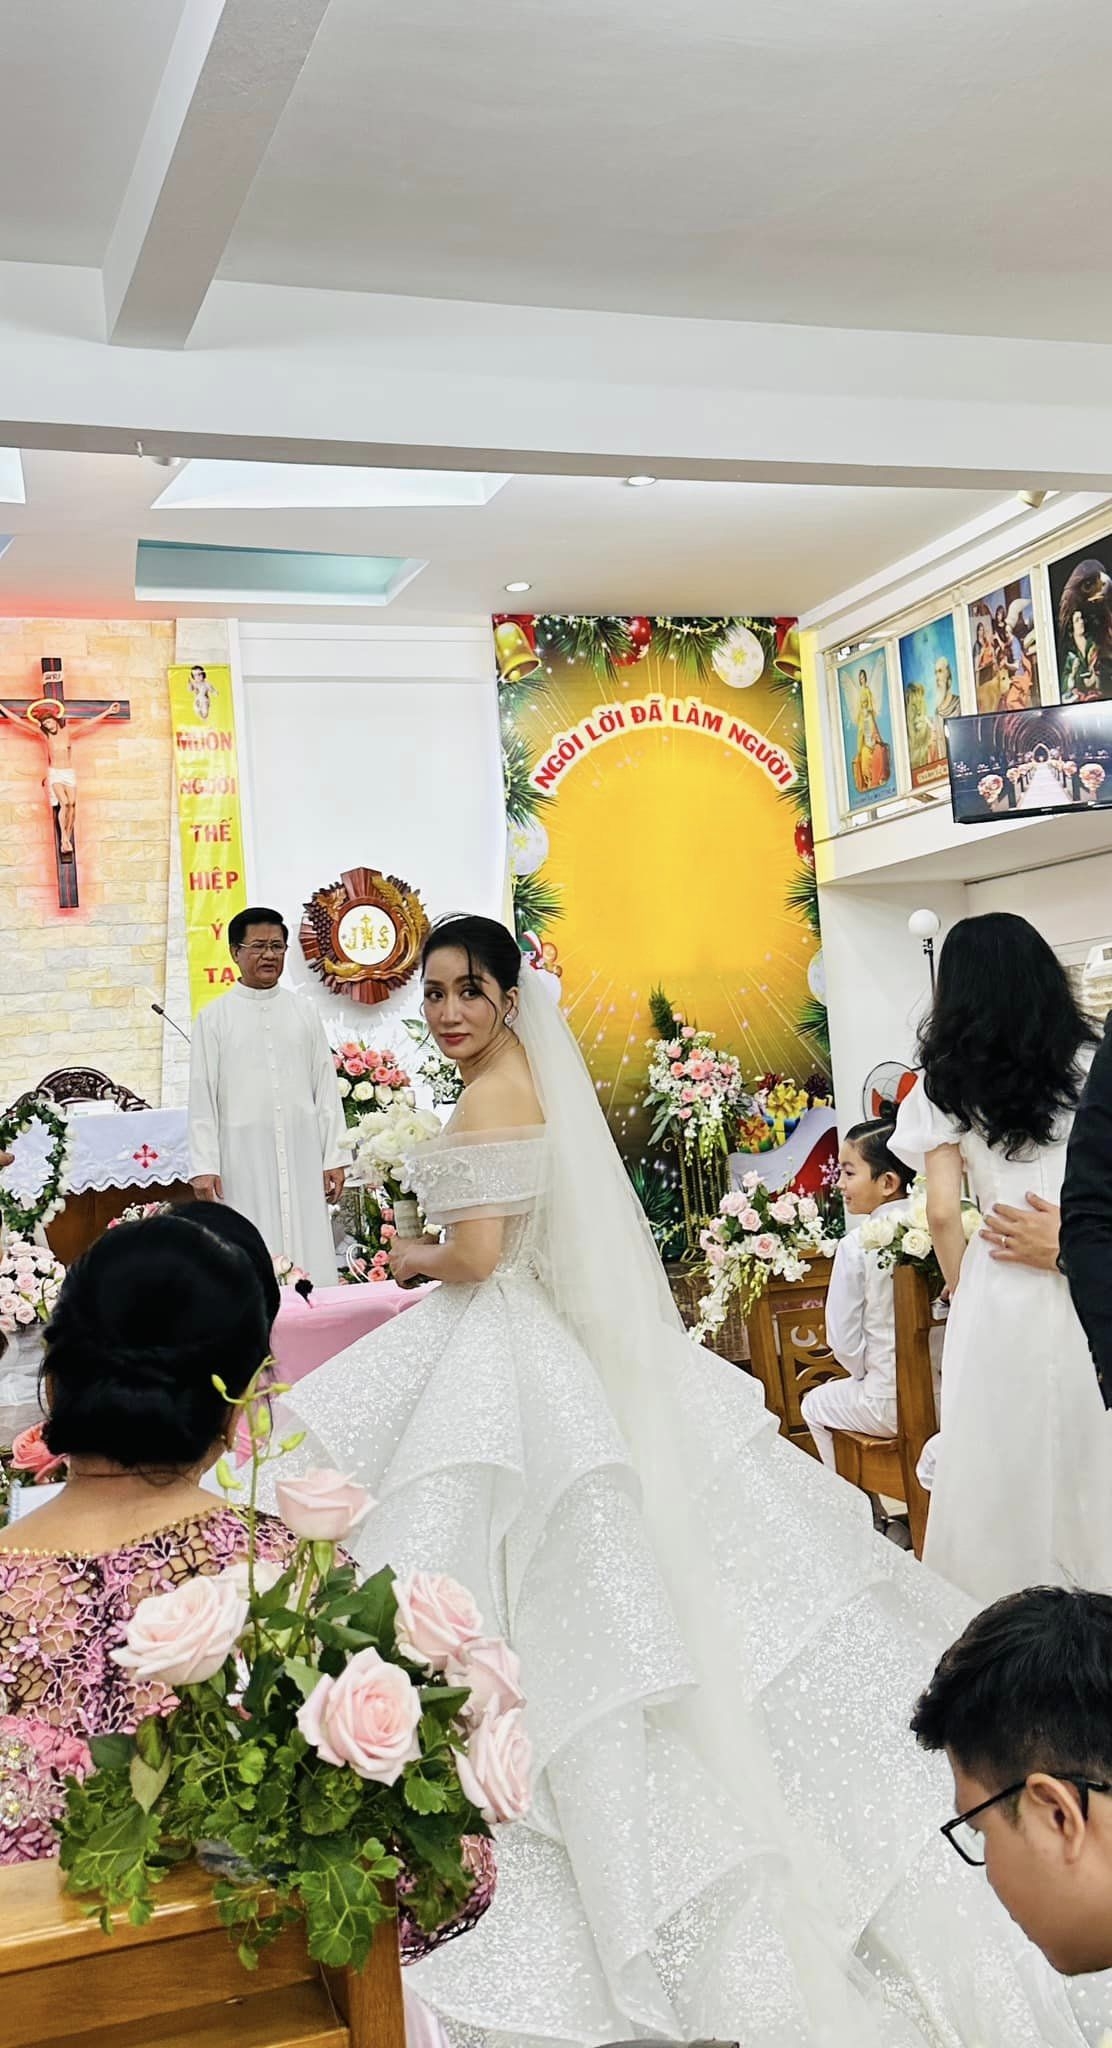 Cô dâu Khánh Thi hạnh phúc trong hôn lễ trang trọng tổ chức tại nhà thờ